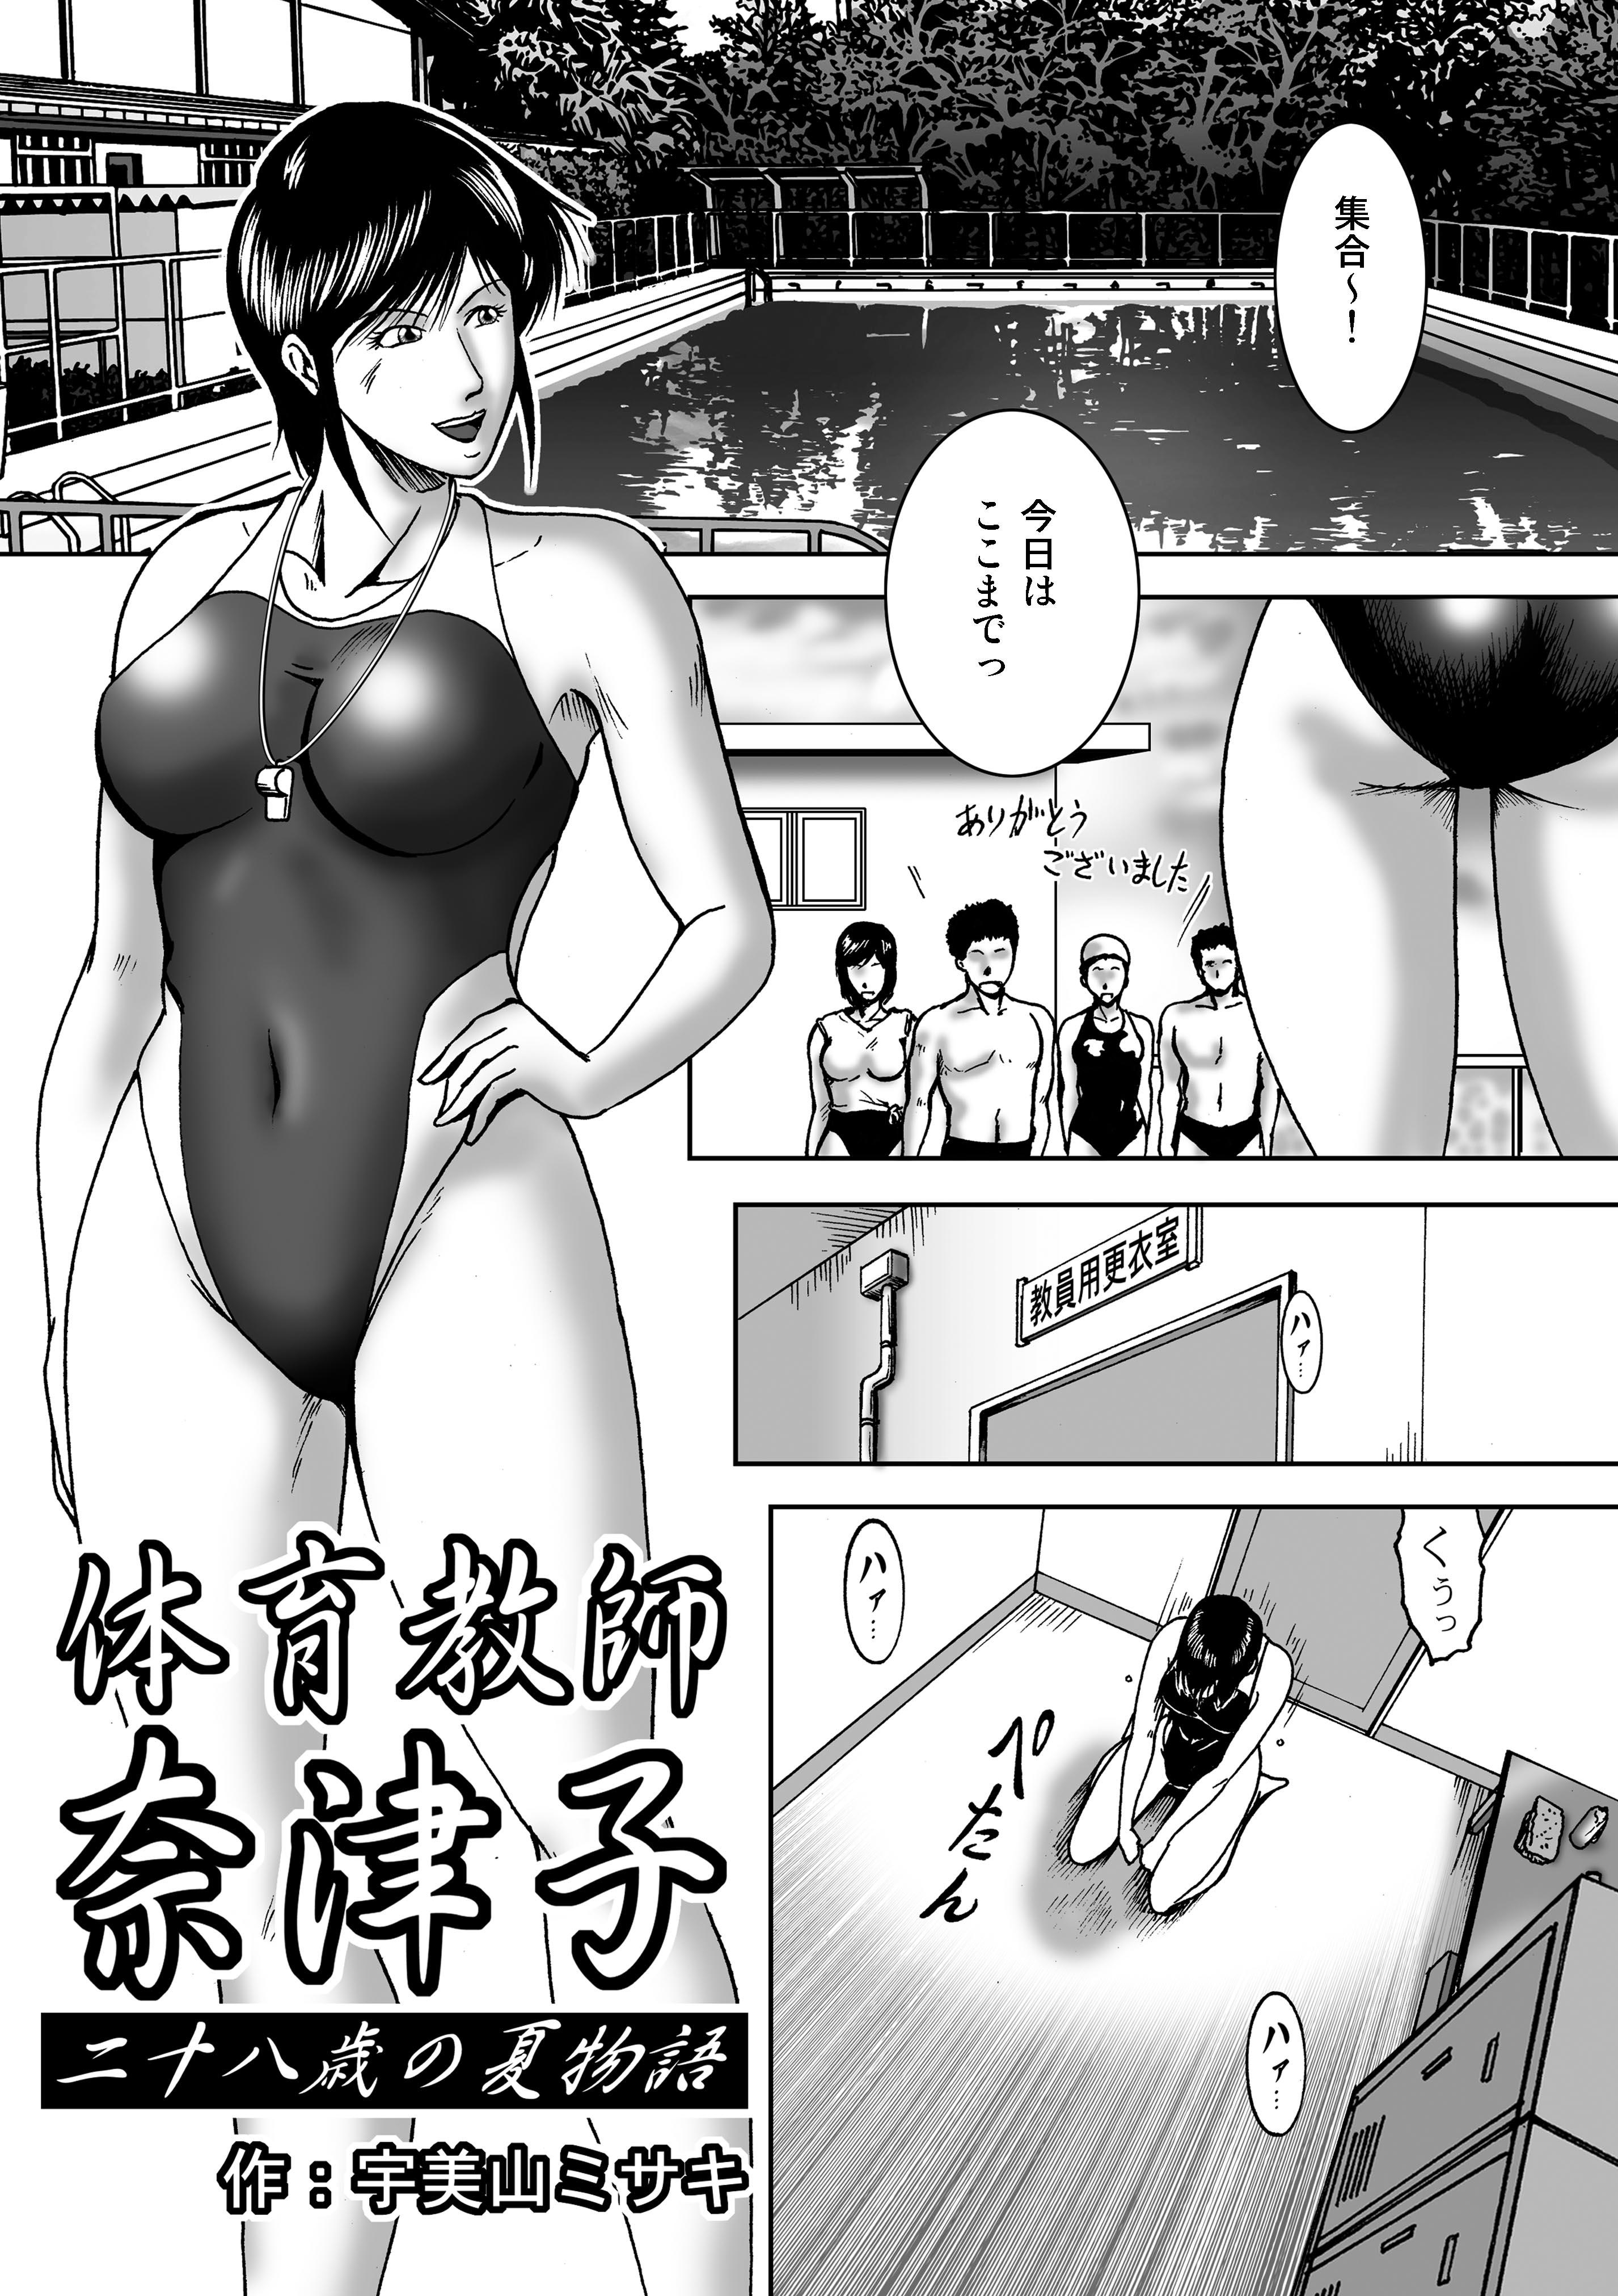 Swim Coach Natsuko - Age 28 5